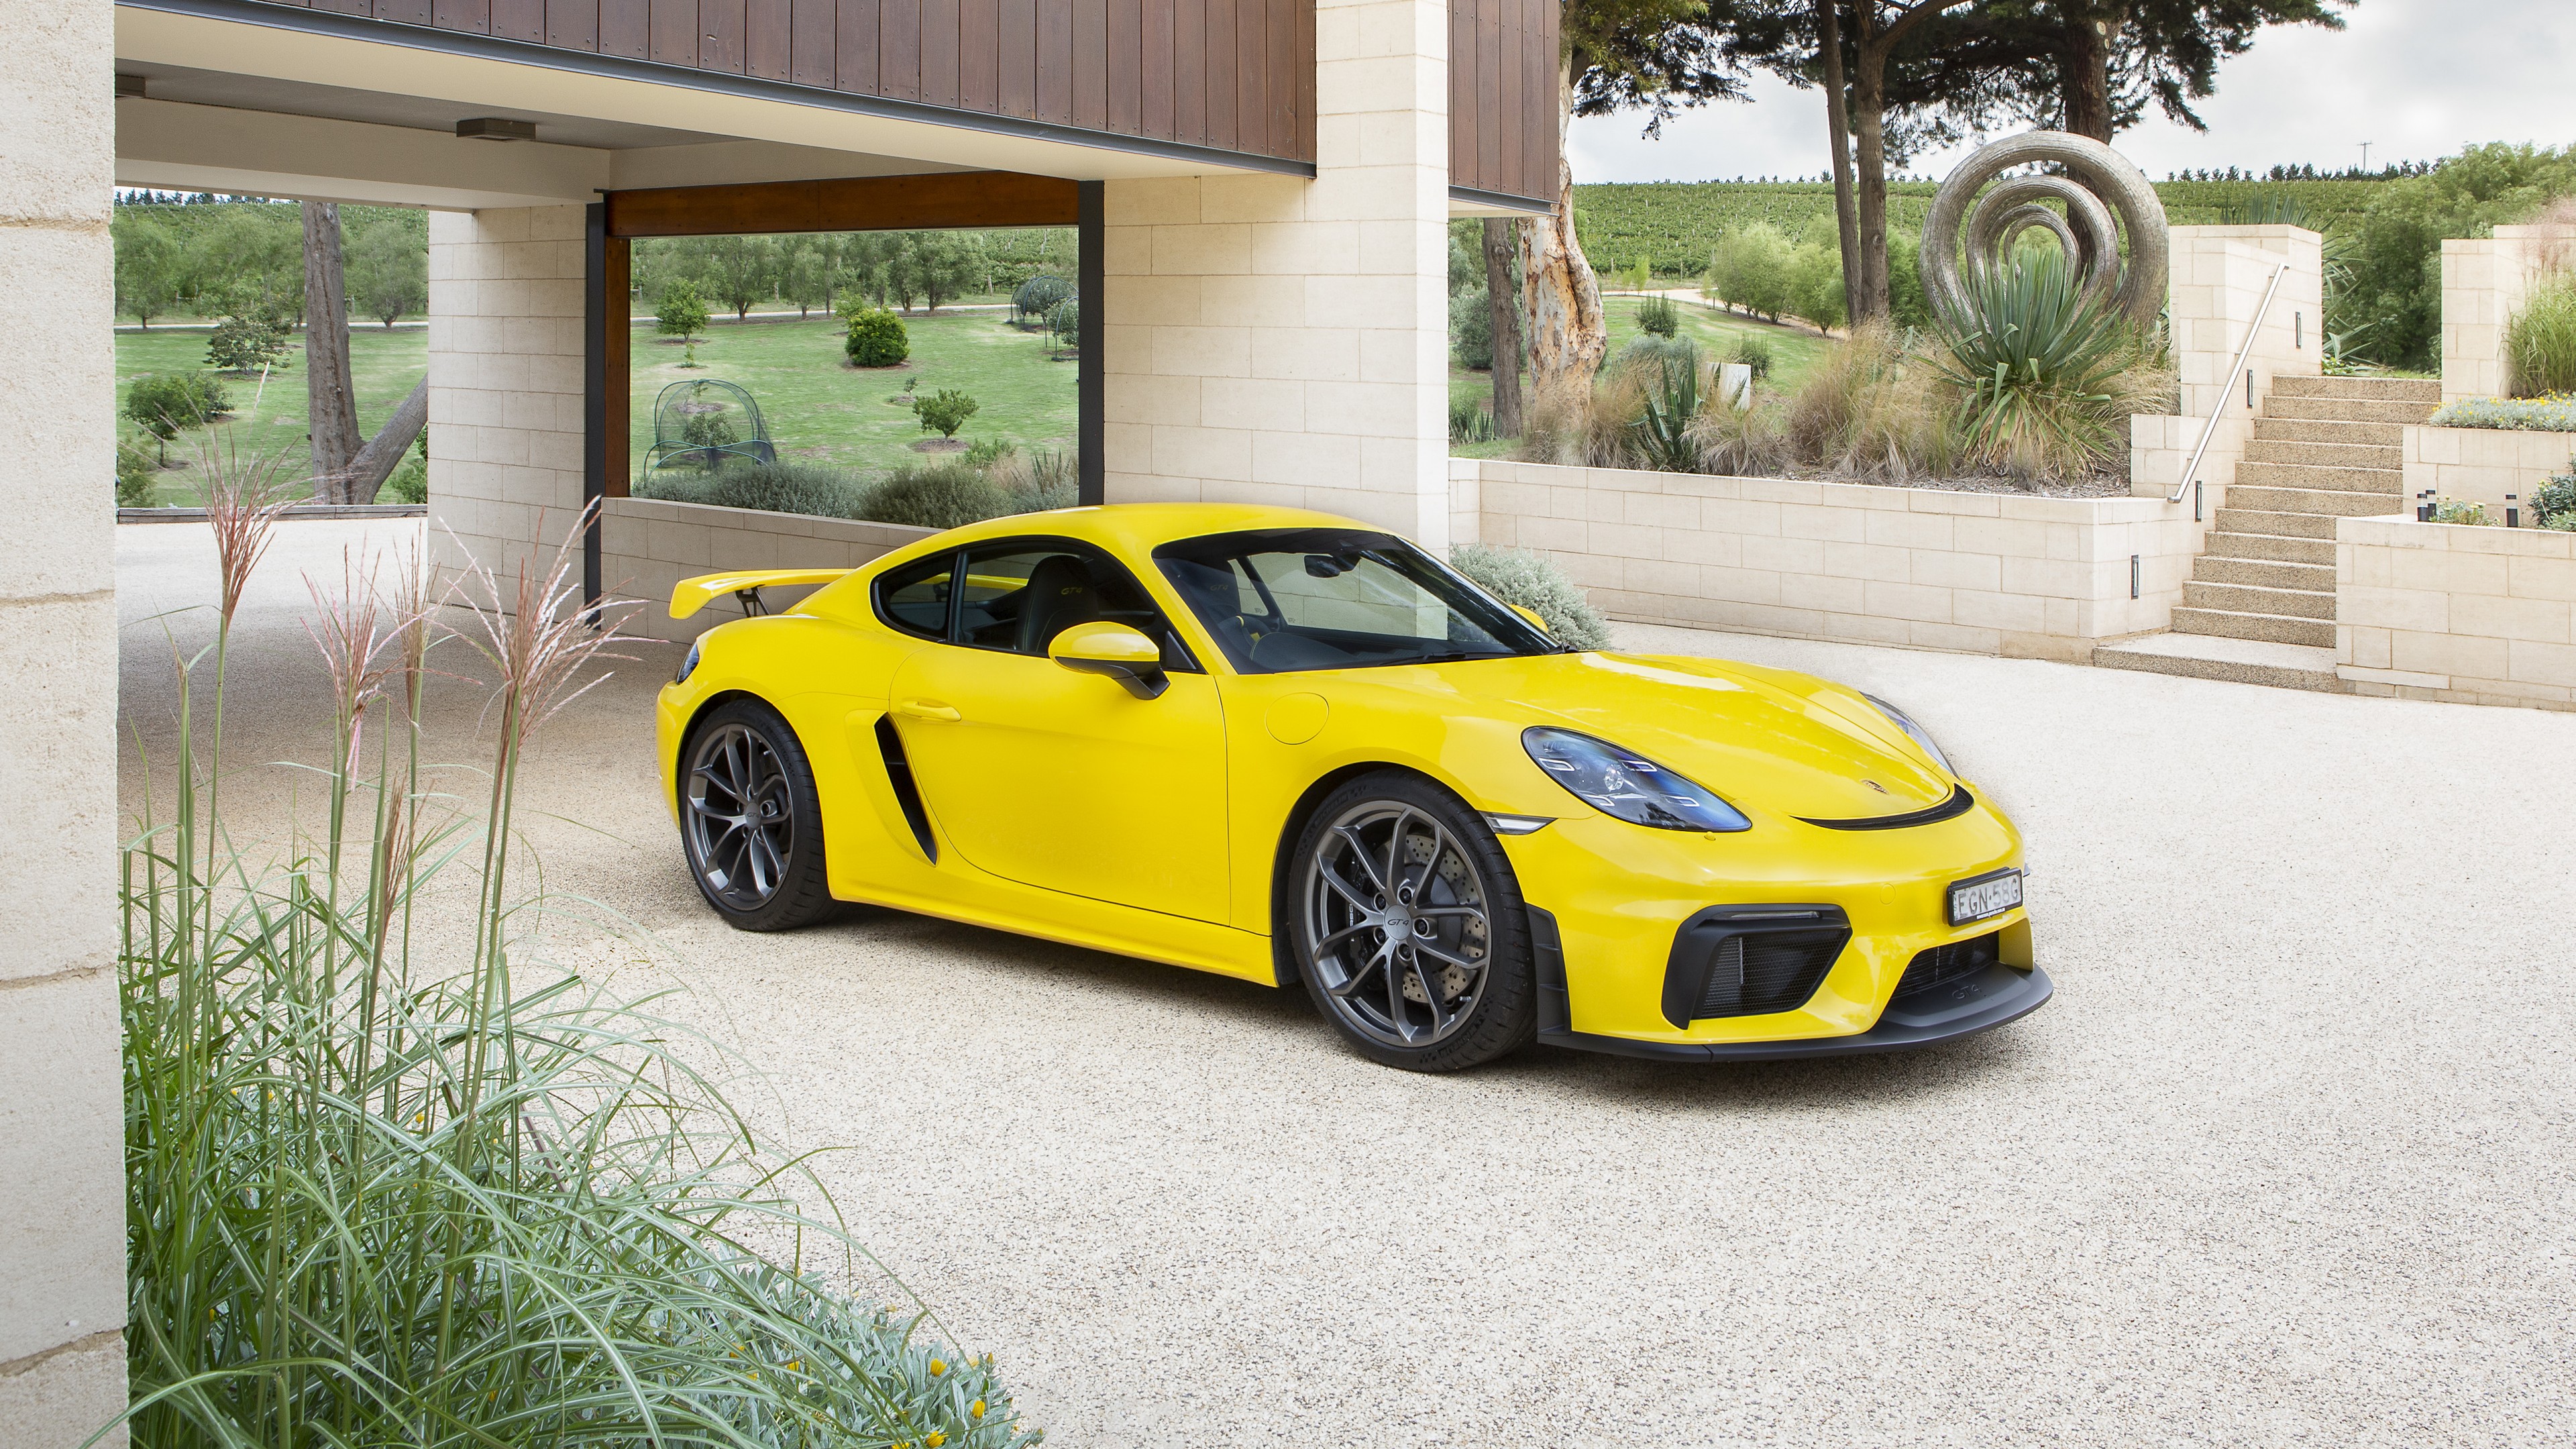 General 3840x2160 car vehicle sports car yellow cars Porsche 718 Porsche Porsche Cayman German cars Volkswagen Group